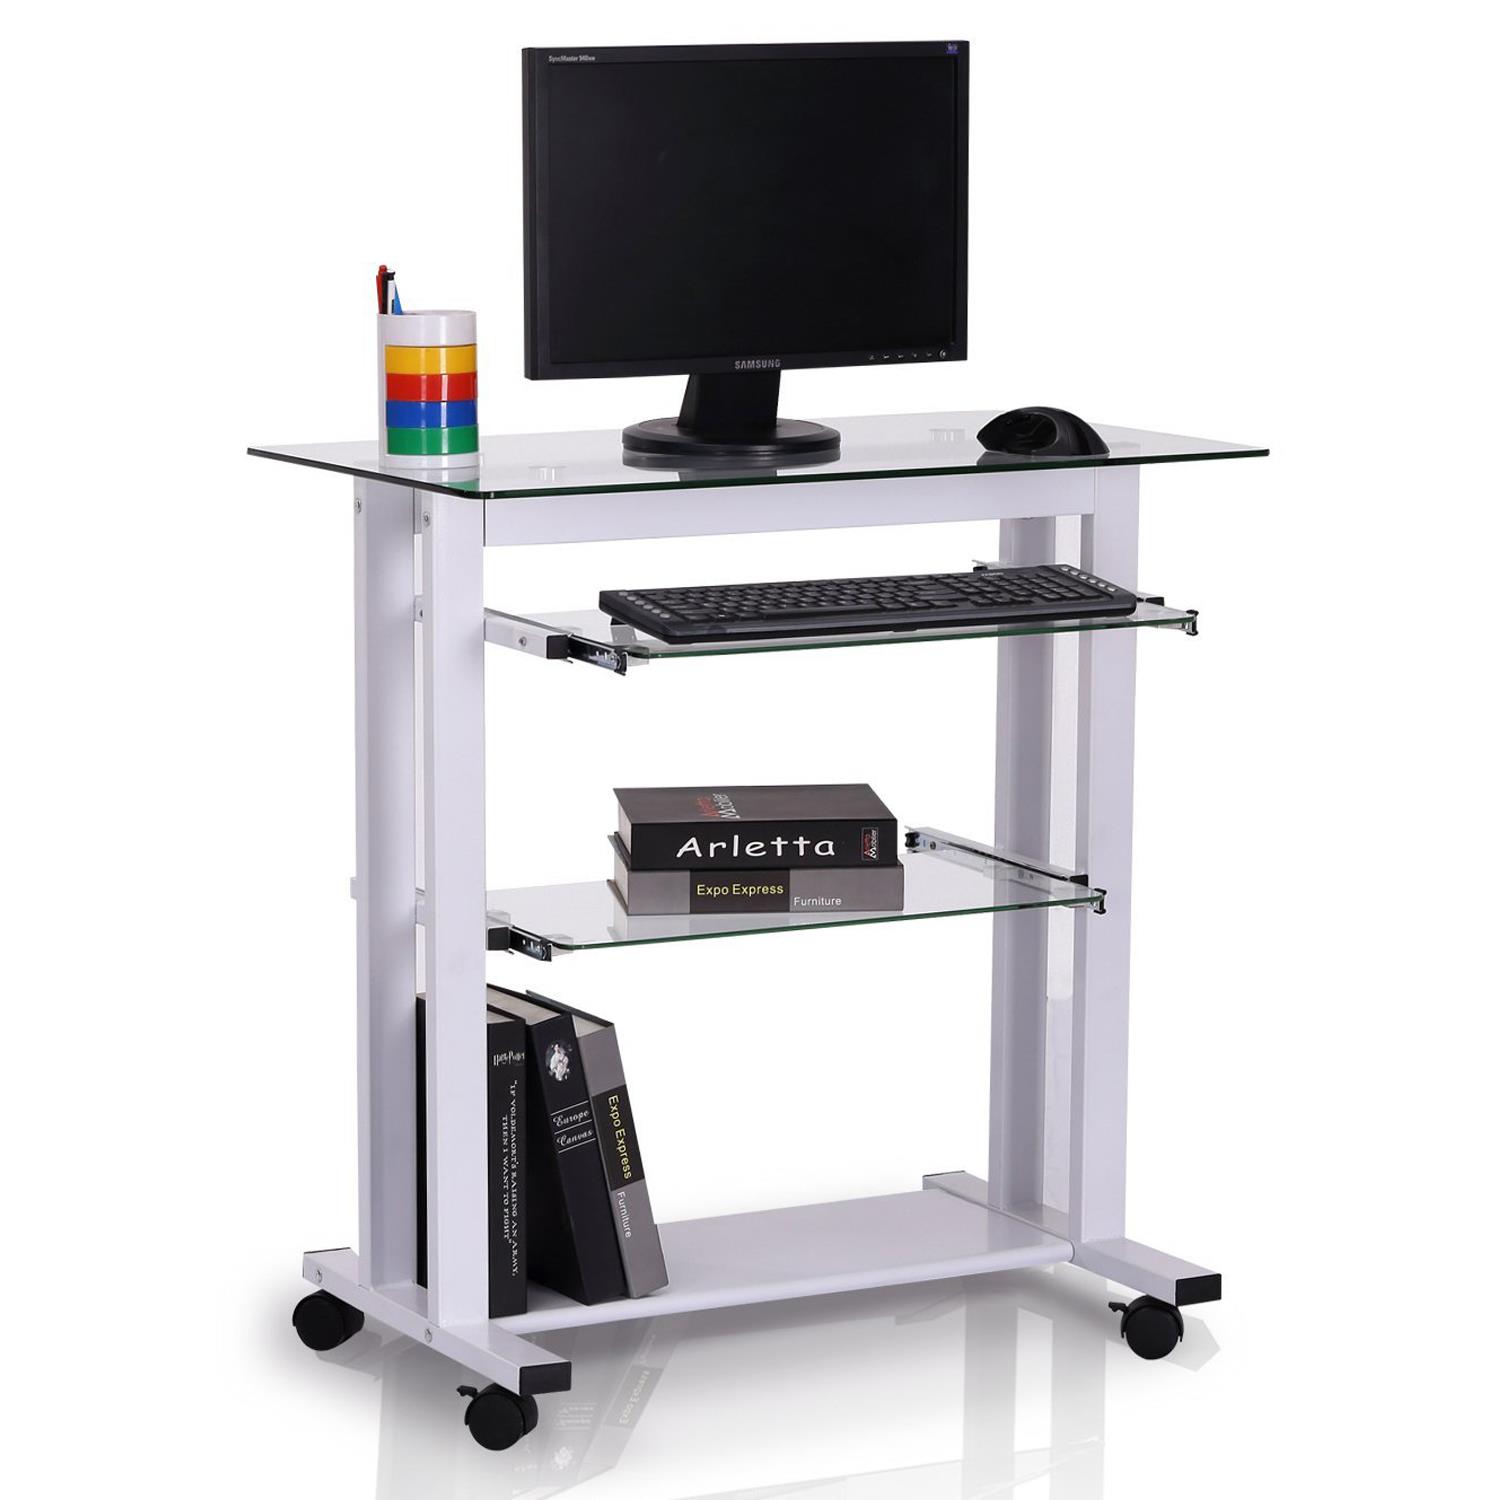 Computertisch TOKIN, Kompakt, 80x51x83 cm, Glas und Metall, Farbe Weiß